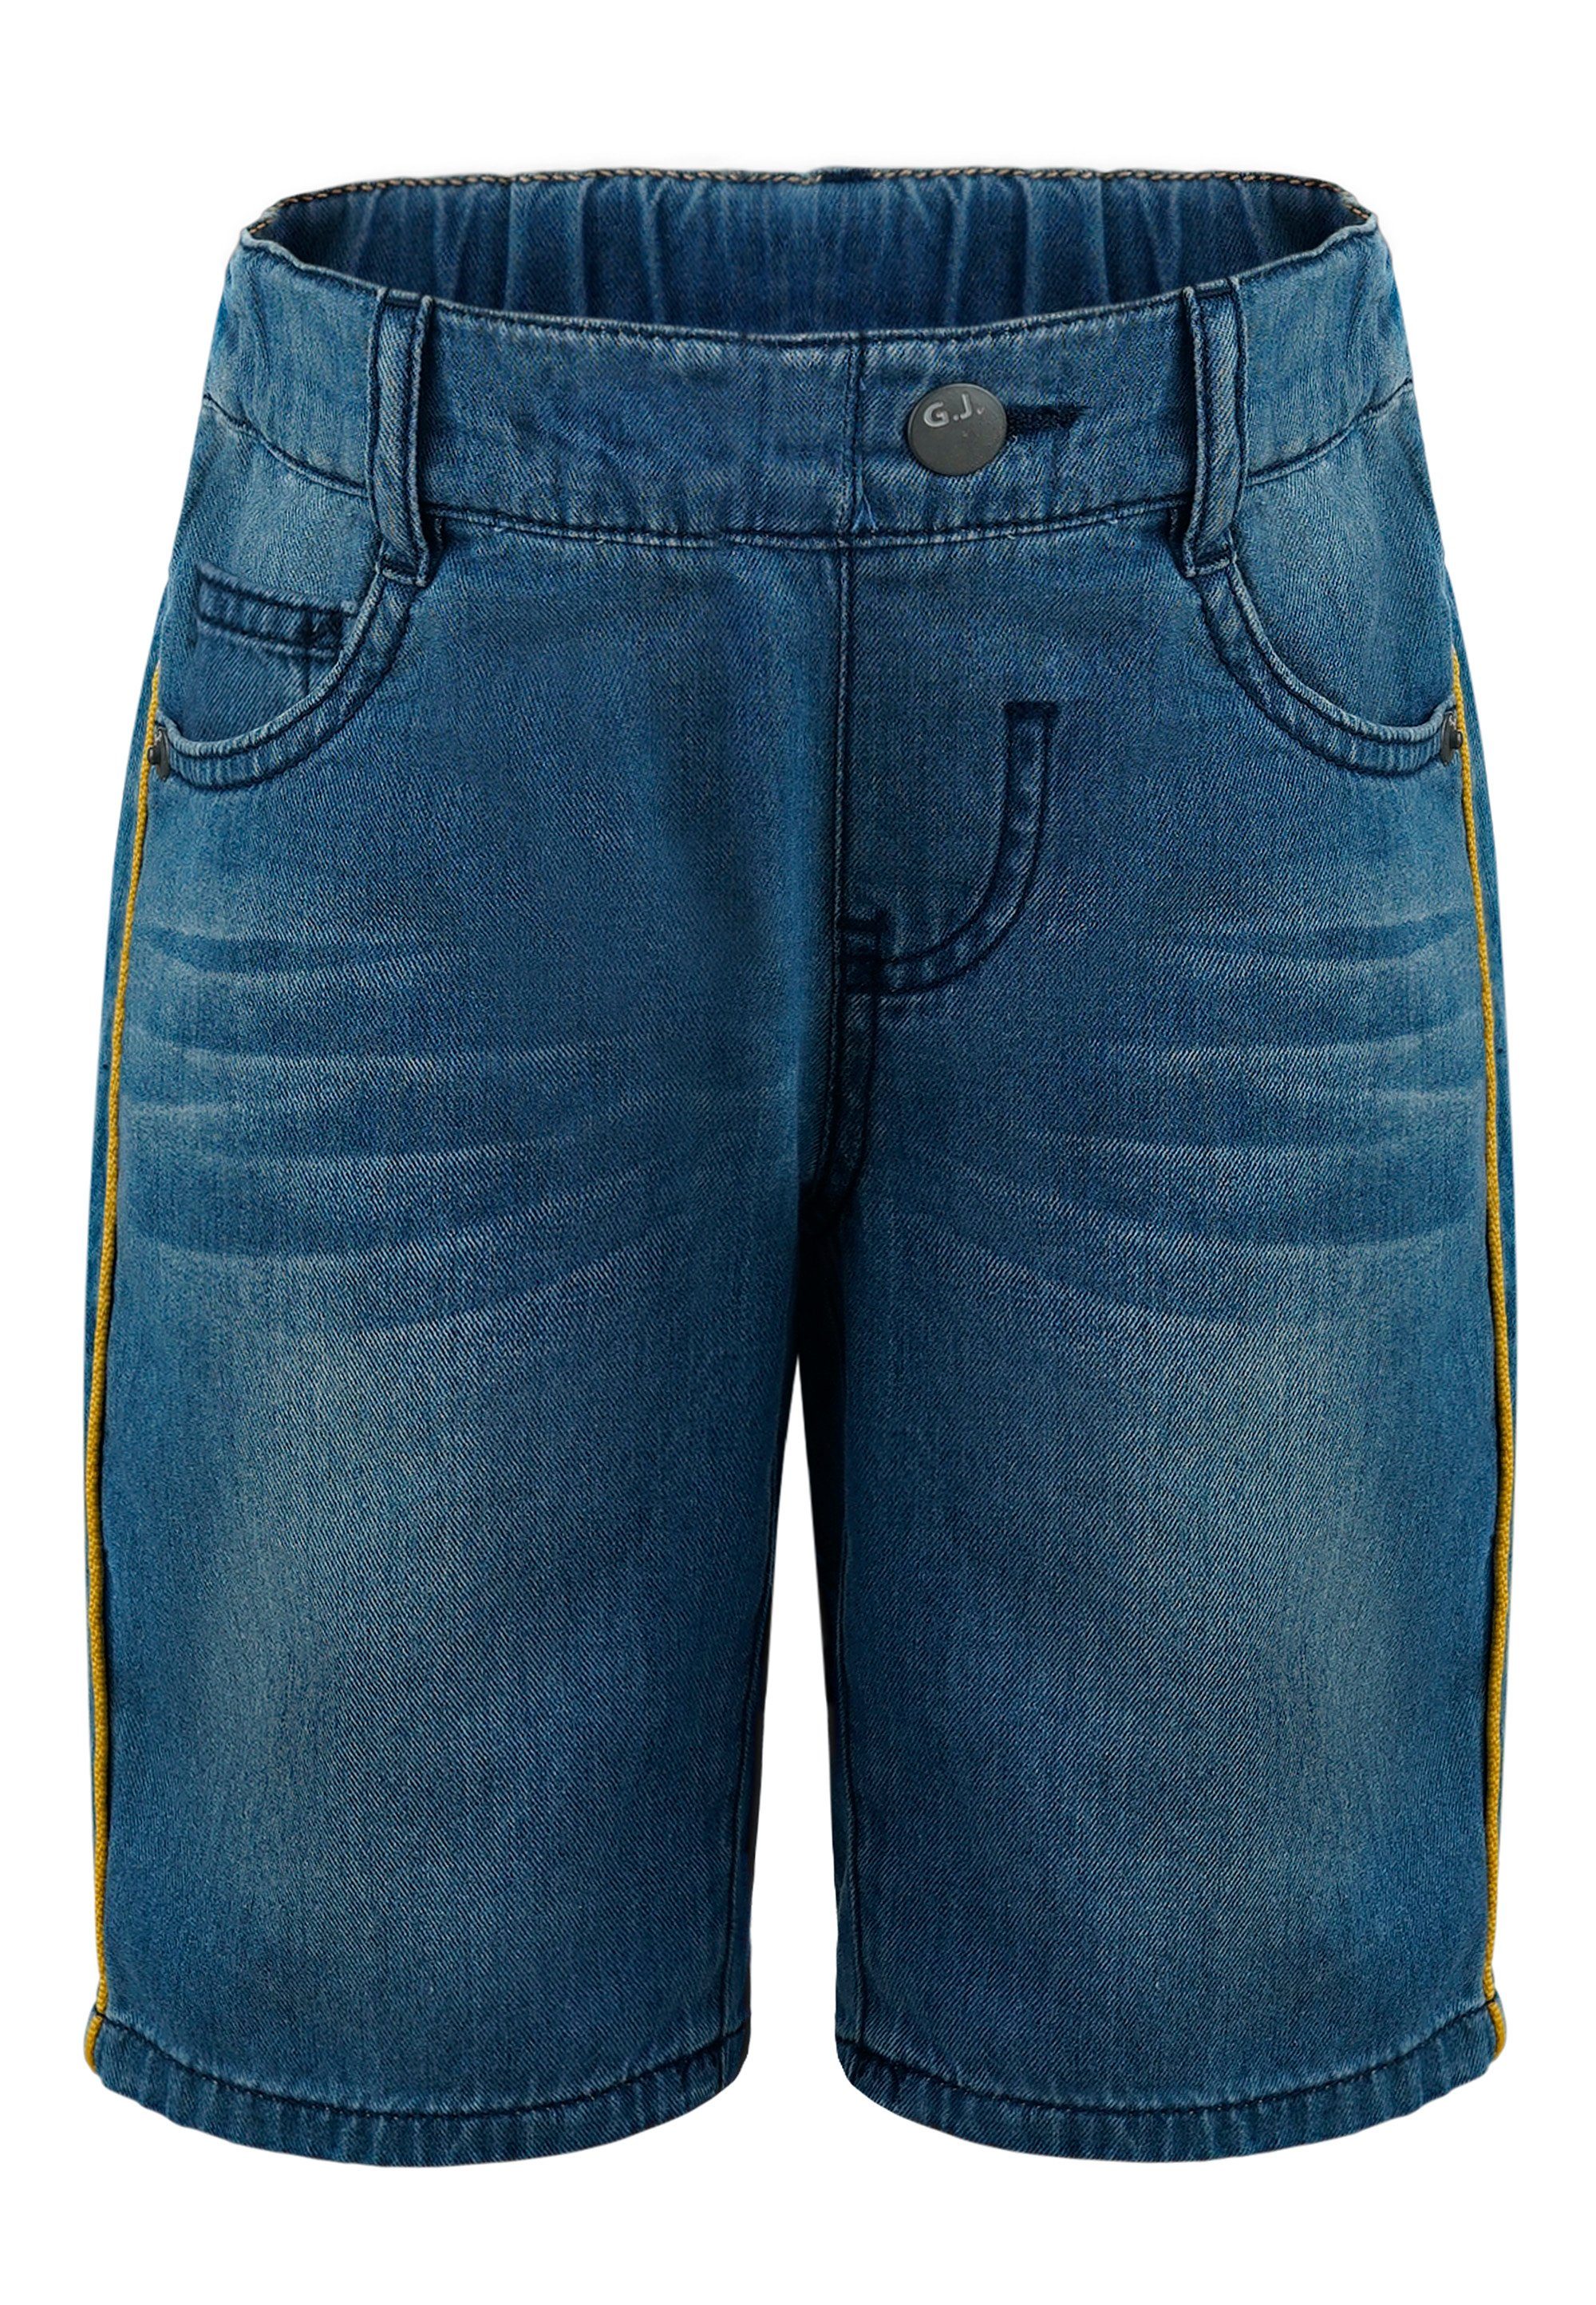 GIORDANO junior Shorts mit tollen Kontrast-Streifen an den Seiten | Shorts